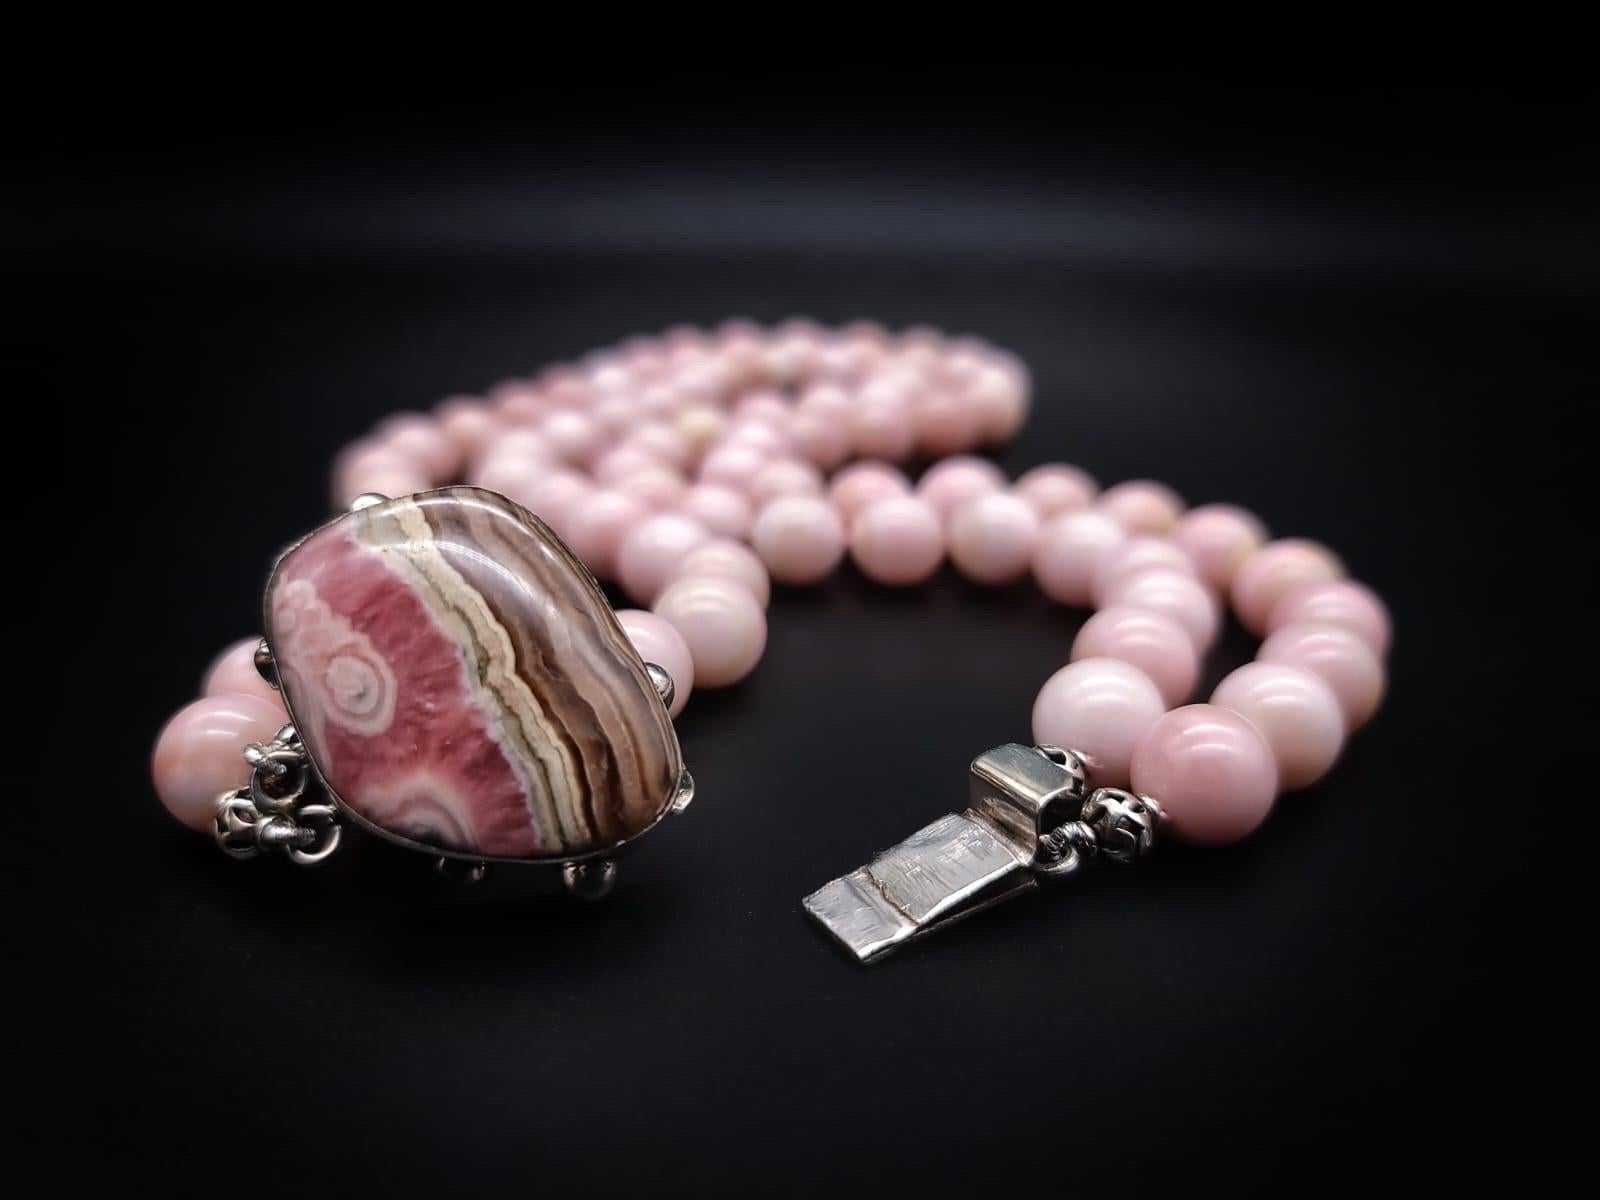 Einzigartig

Ungewöhnlicher rosa Onyx  2 Stränge mit aufeinander abgestimmten 12m.m Perlen. Schmeichelhafte zartrosa Perlen mit sanften Bändern, einzeln geknotet, umgeben ein Exemplar des geschliffenen Rhodochrosit-Steins, eingefasst in eine